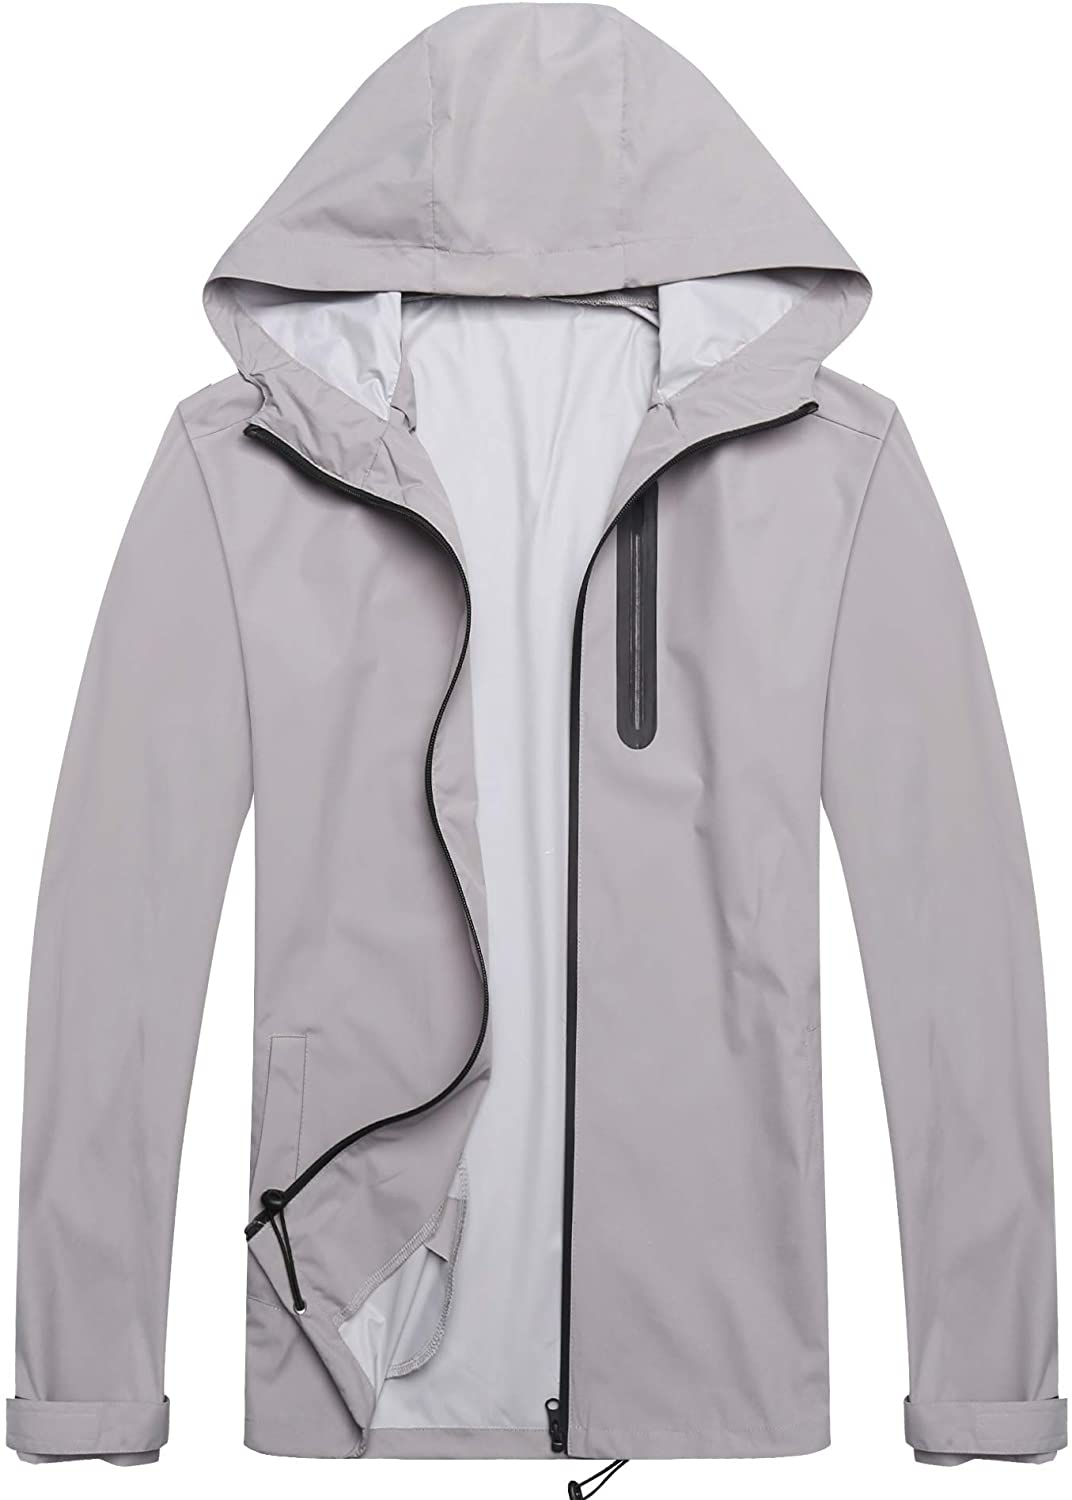 COOFANDY Mens Waterproof Rain Suit With Hood 2 Pieces Lightweight ...